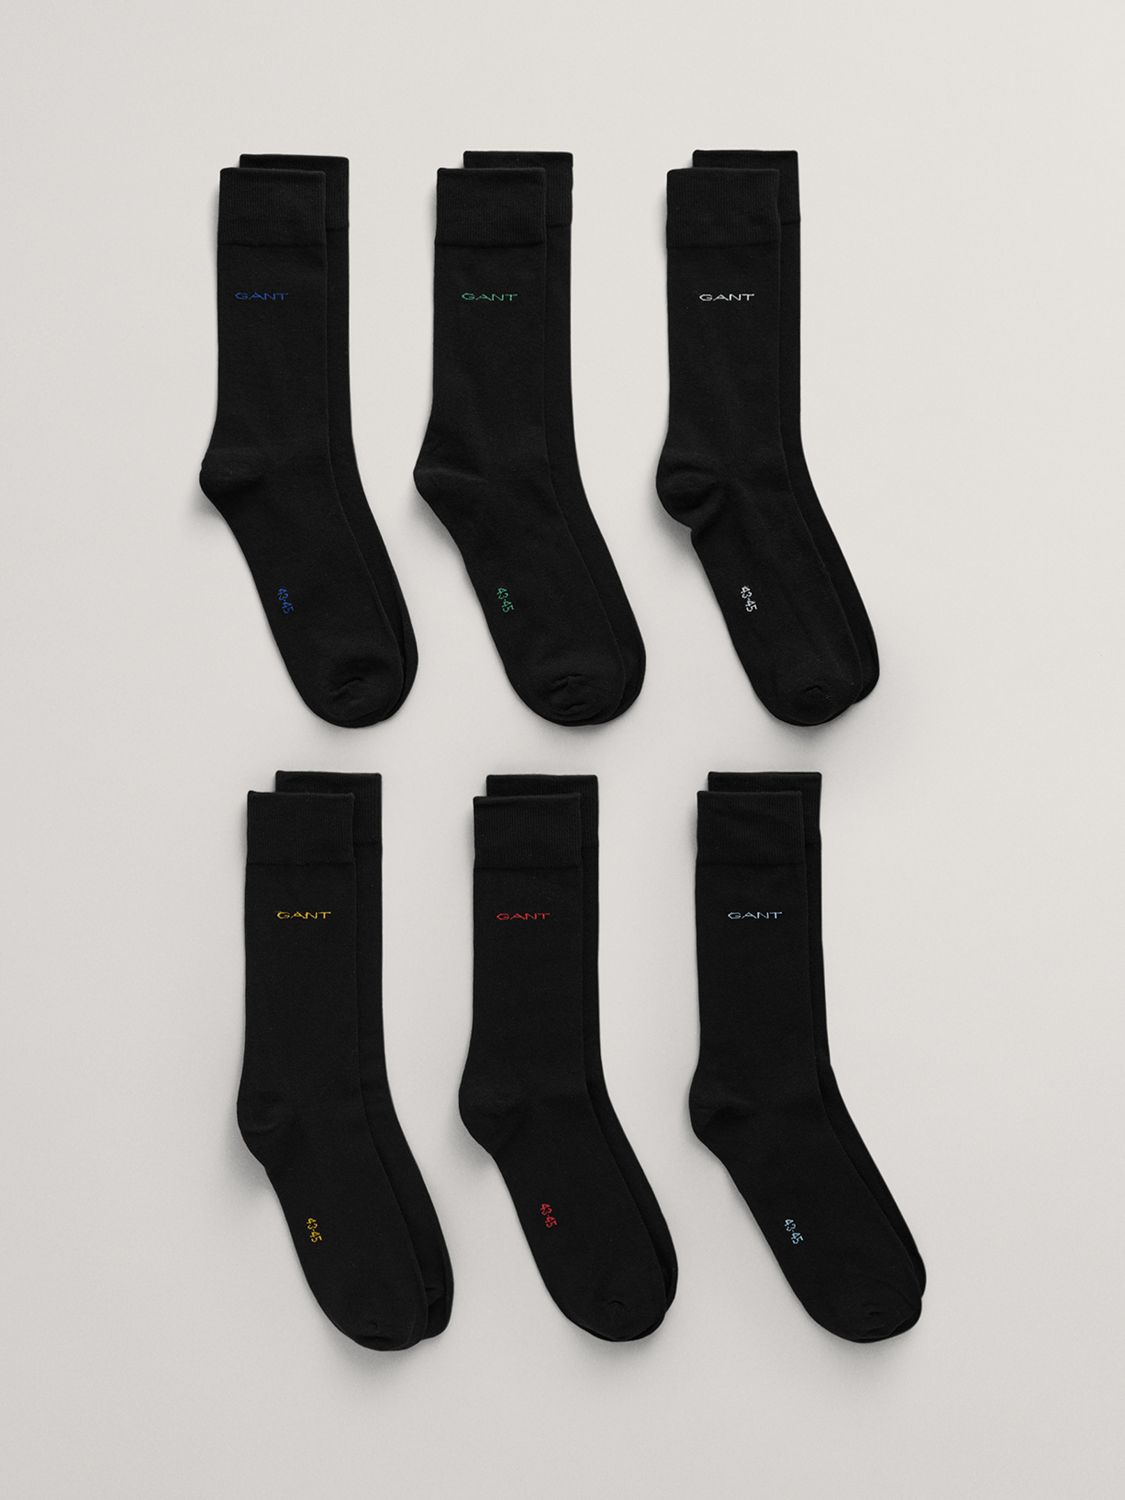 Buy GANT Soft Cotton Blend Ankle Socks, Pack of 6 Online at johnlewis.com